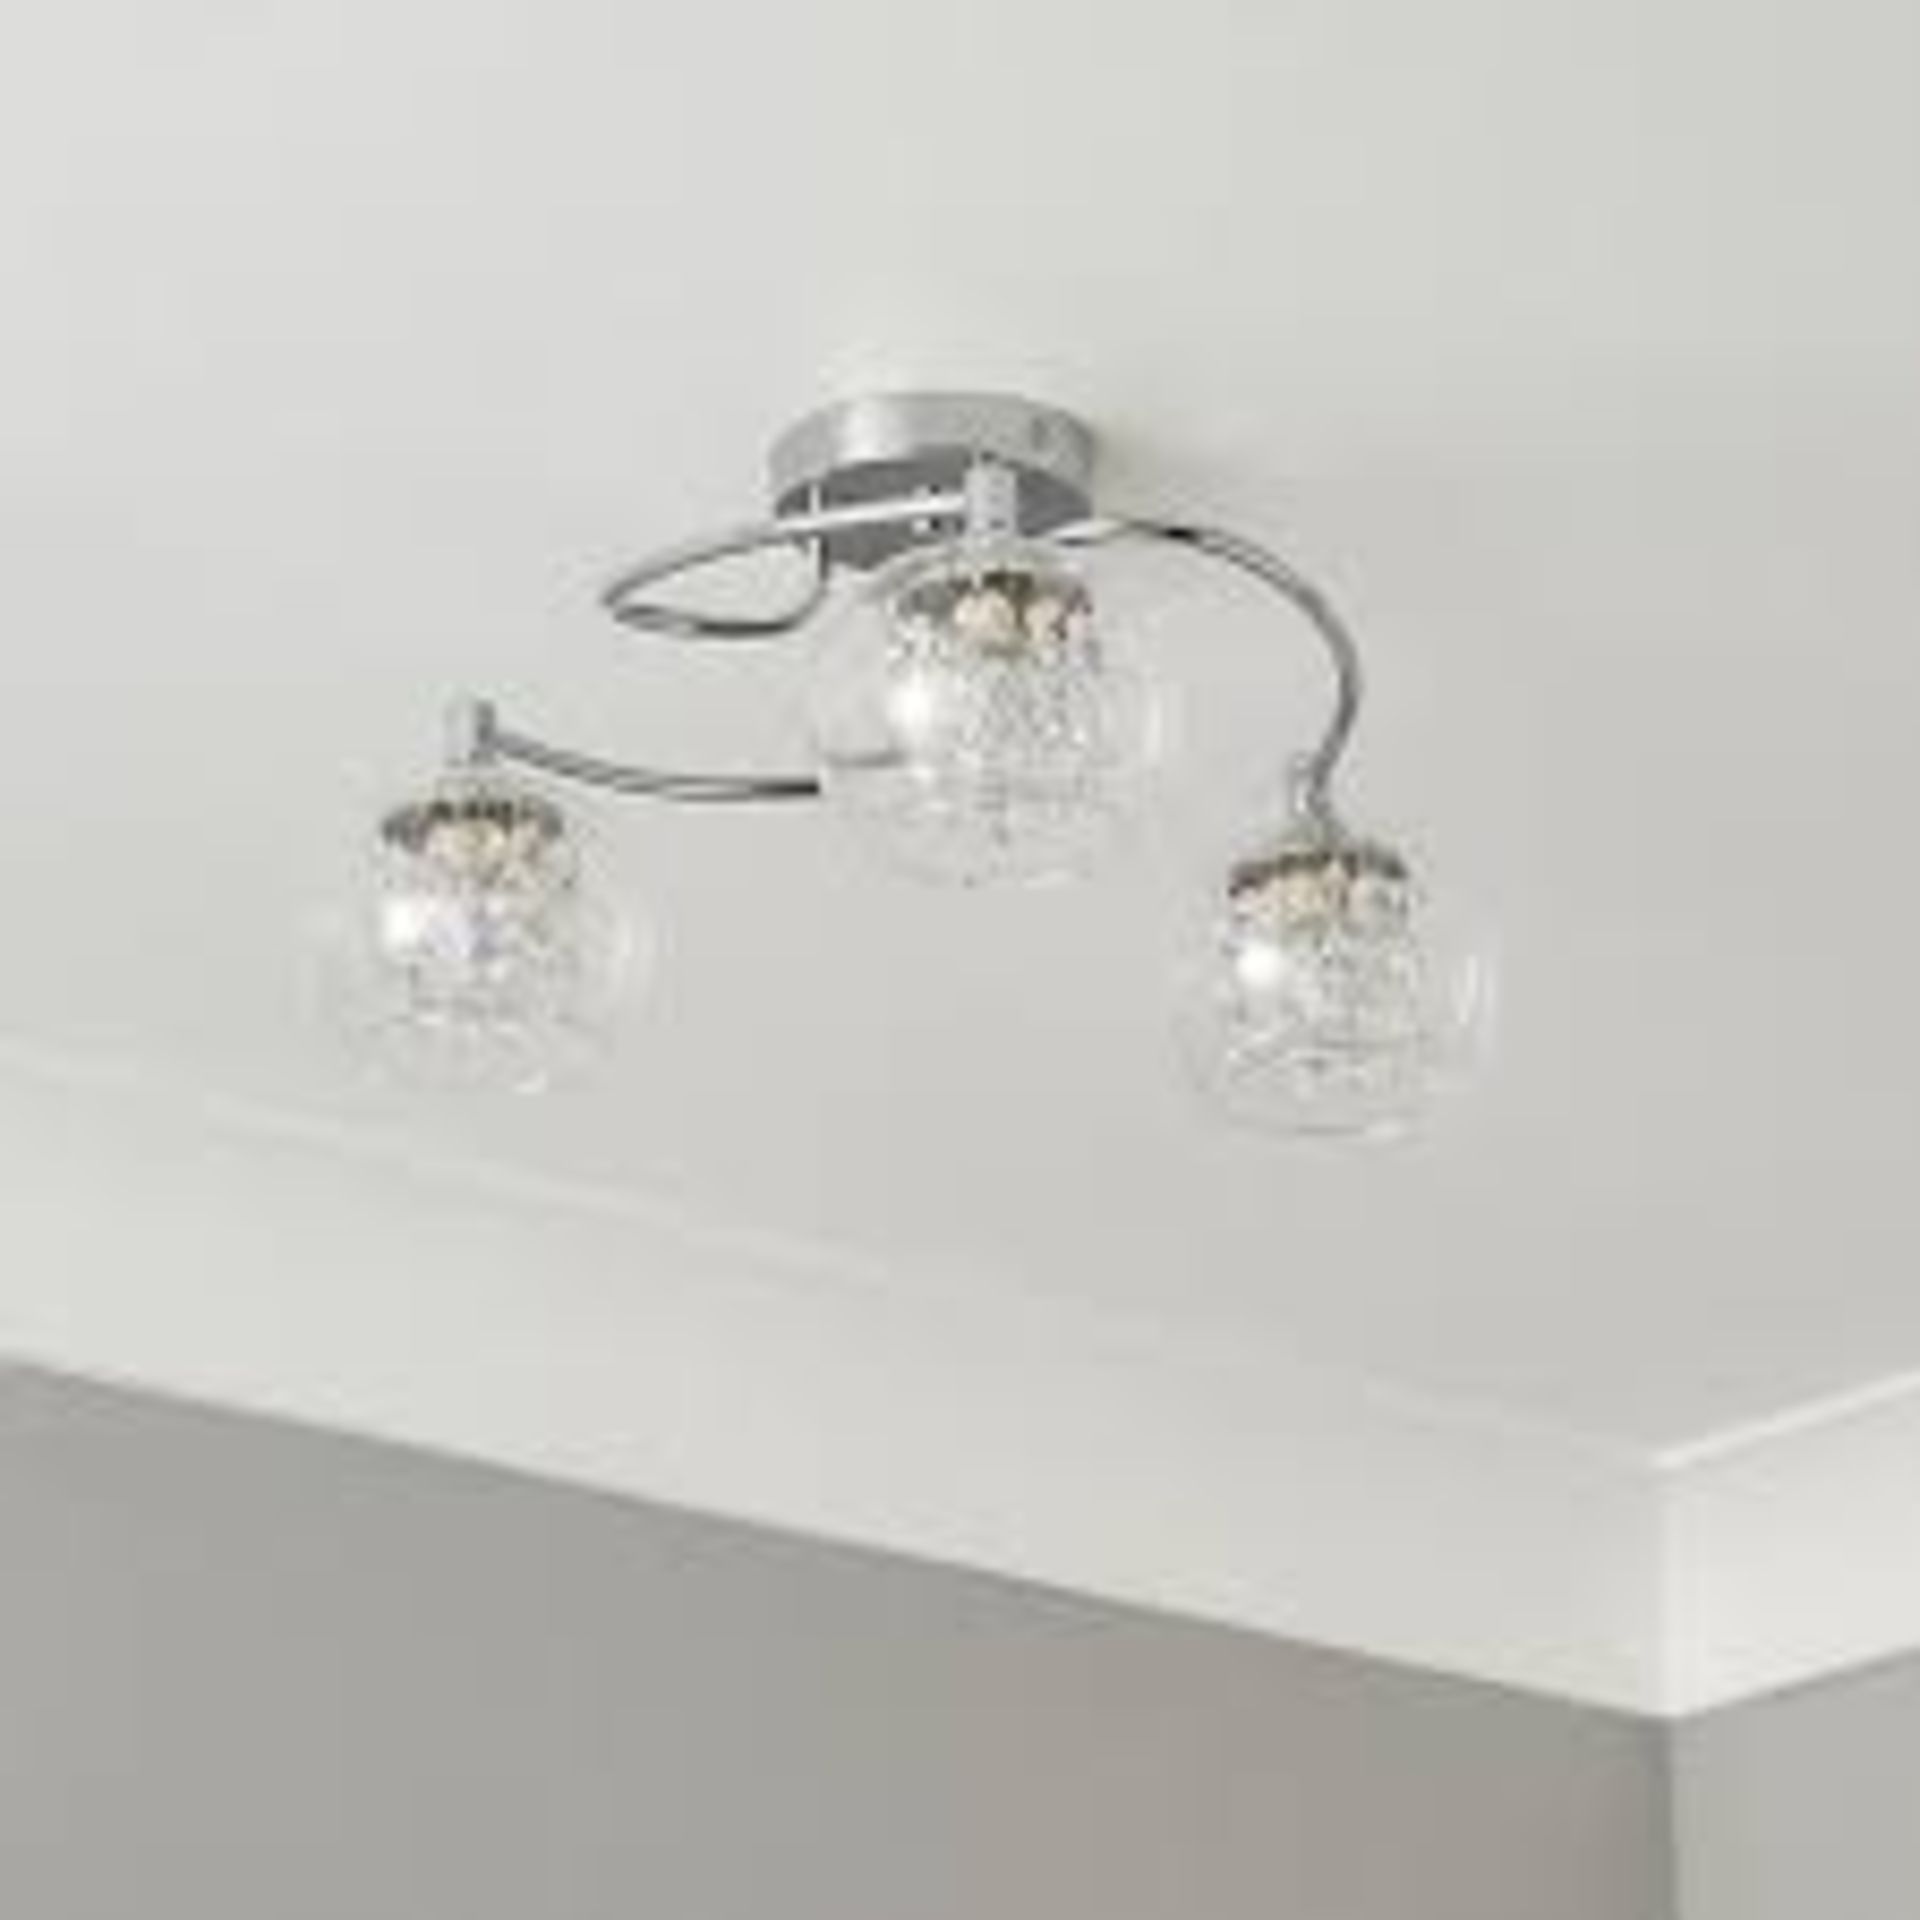 Roma Ceiling Light 3 Lamp Transparent Glass Chrome Bedroom Living. - ER50